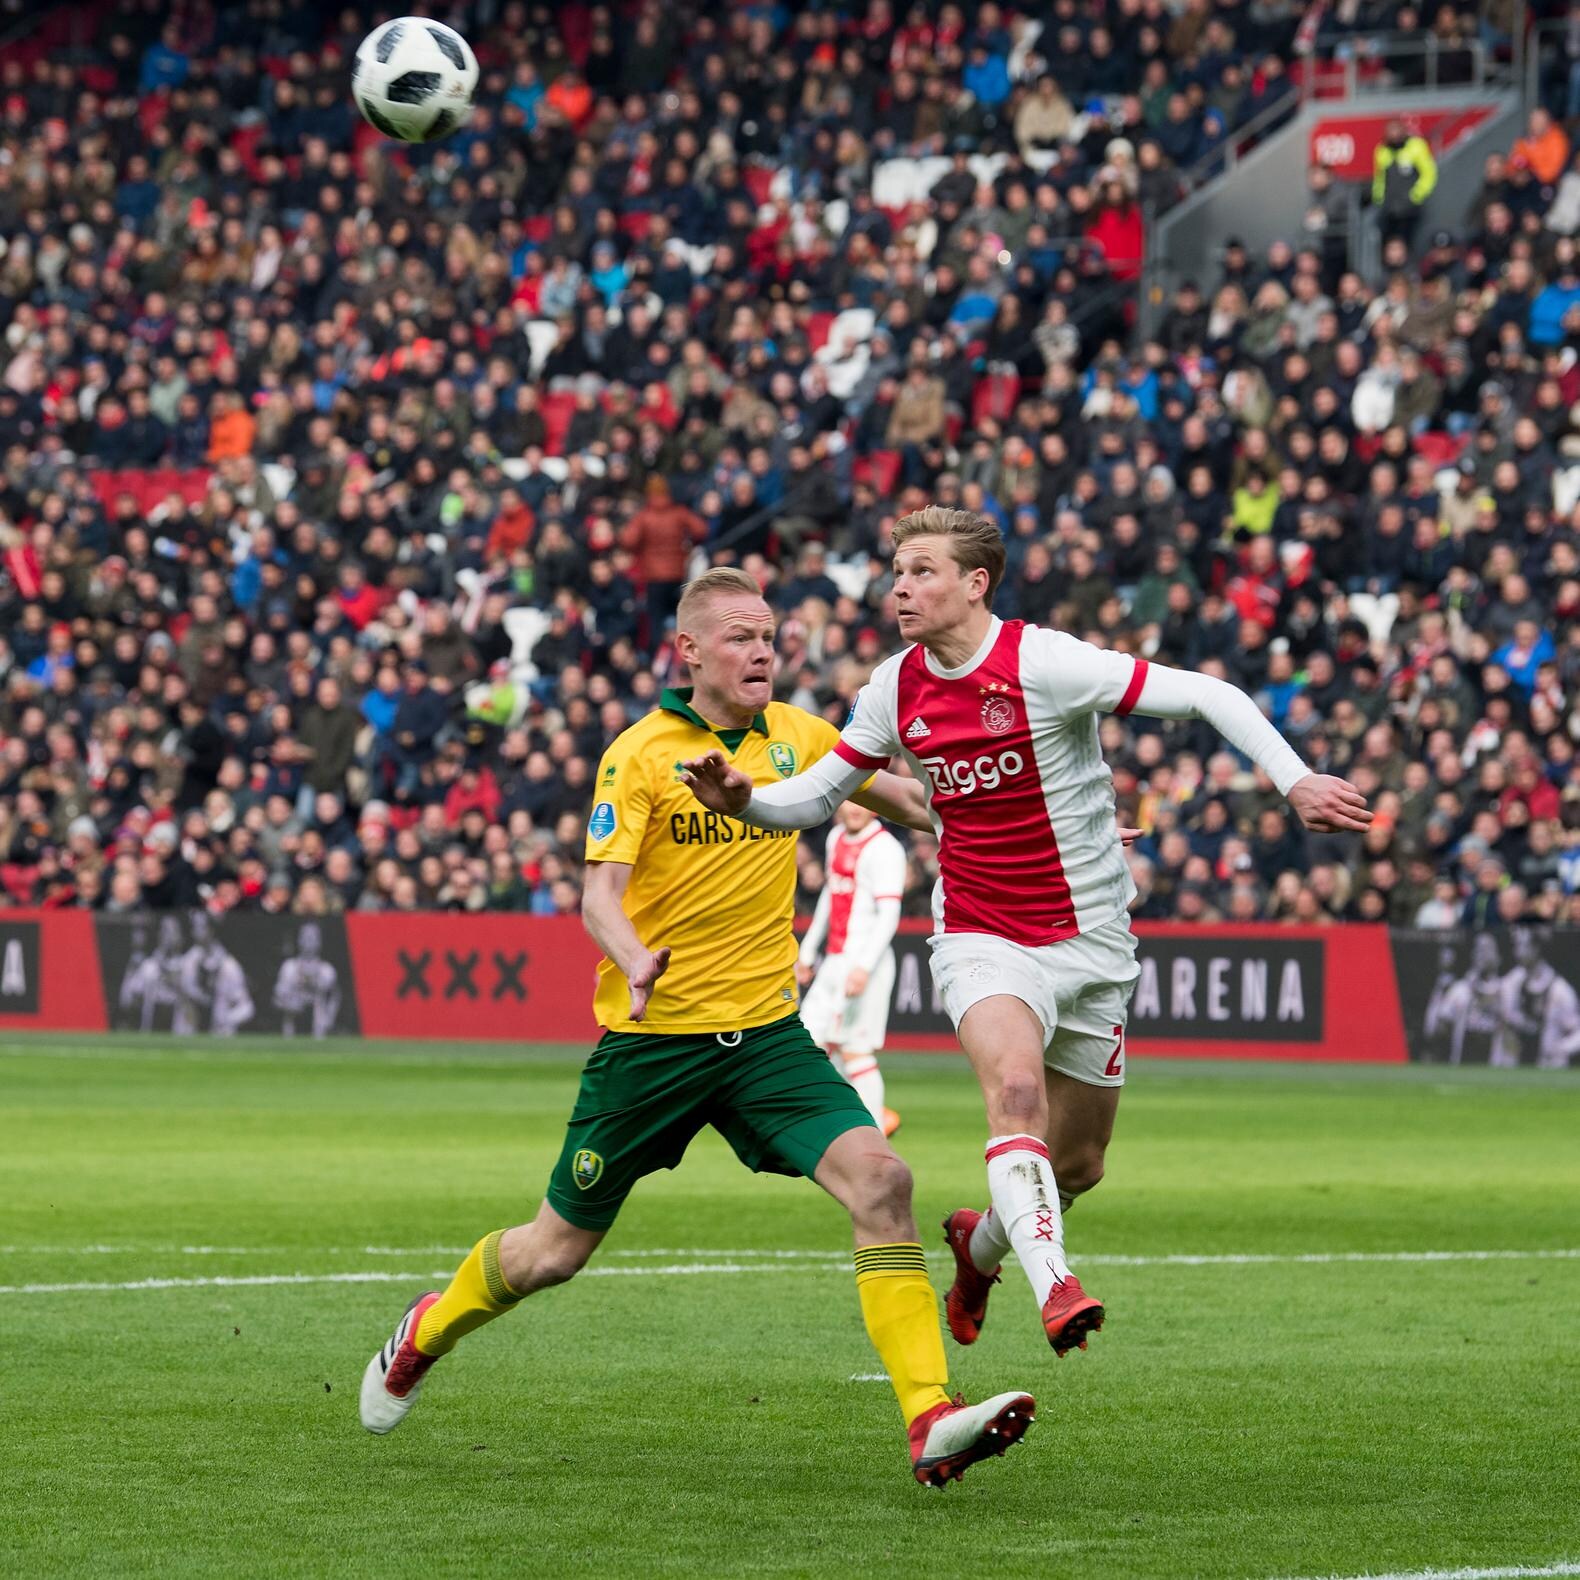 Duur puntenverlies voor Ajax tegen ADO